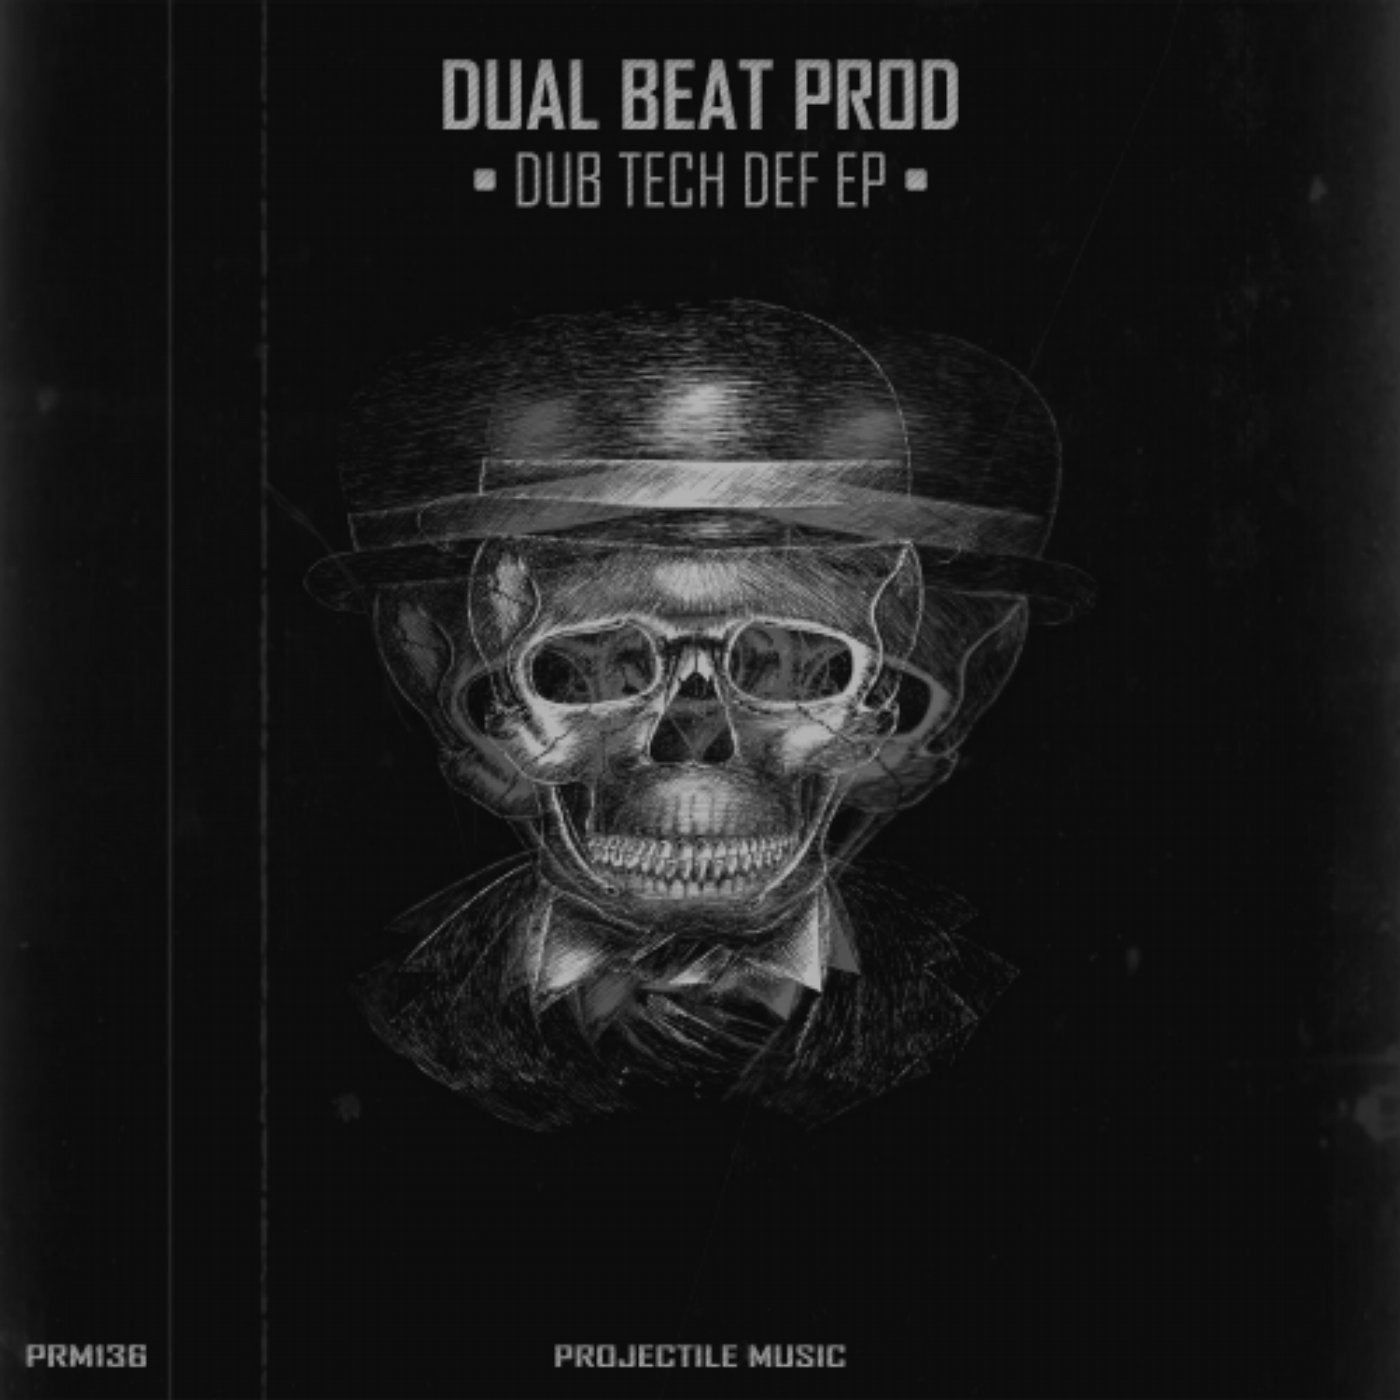 Dub Tech Def EP